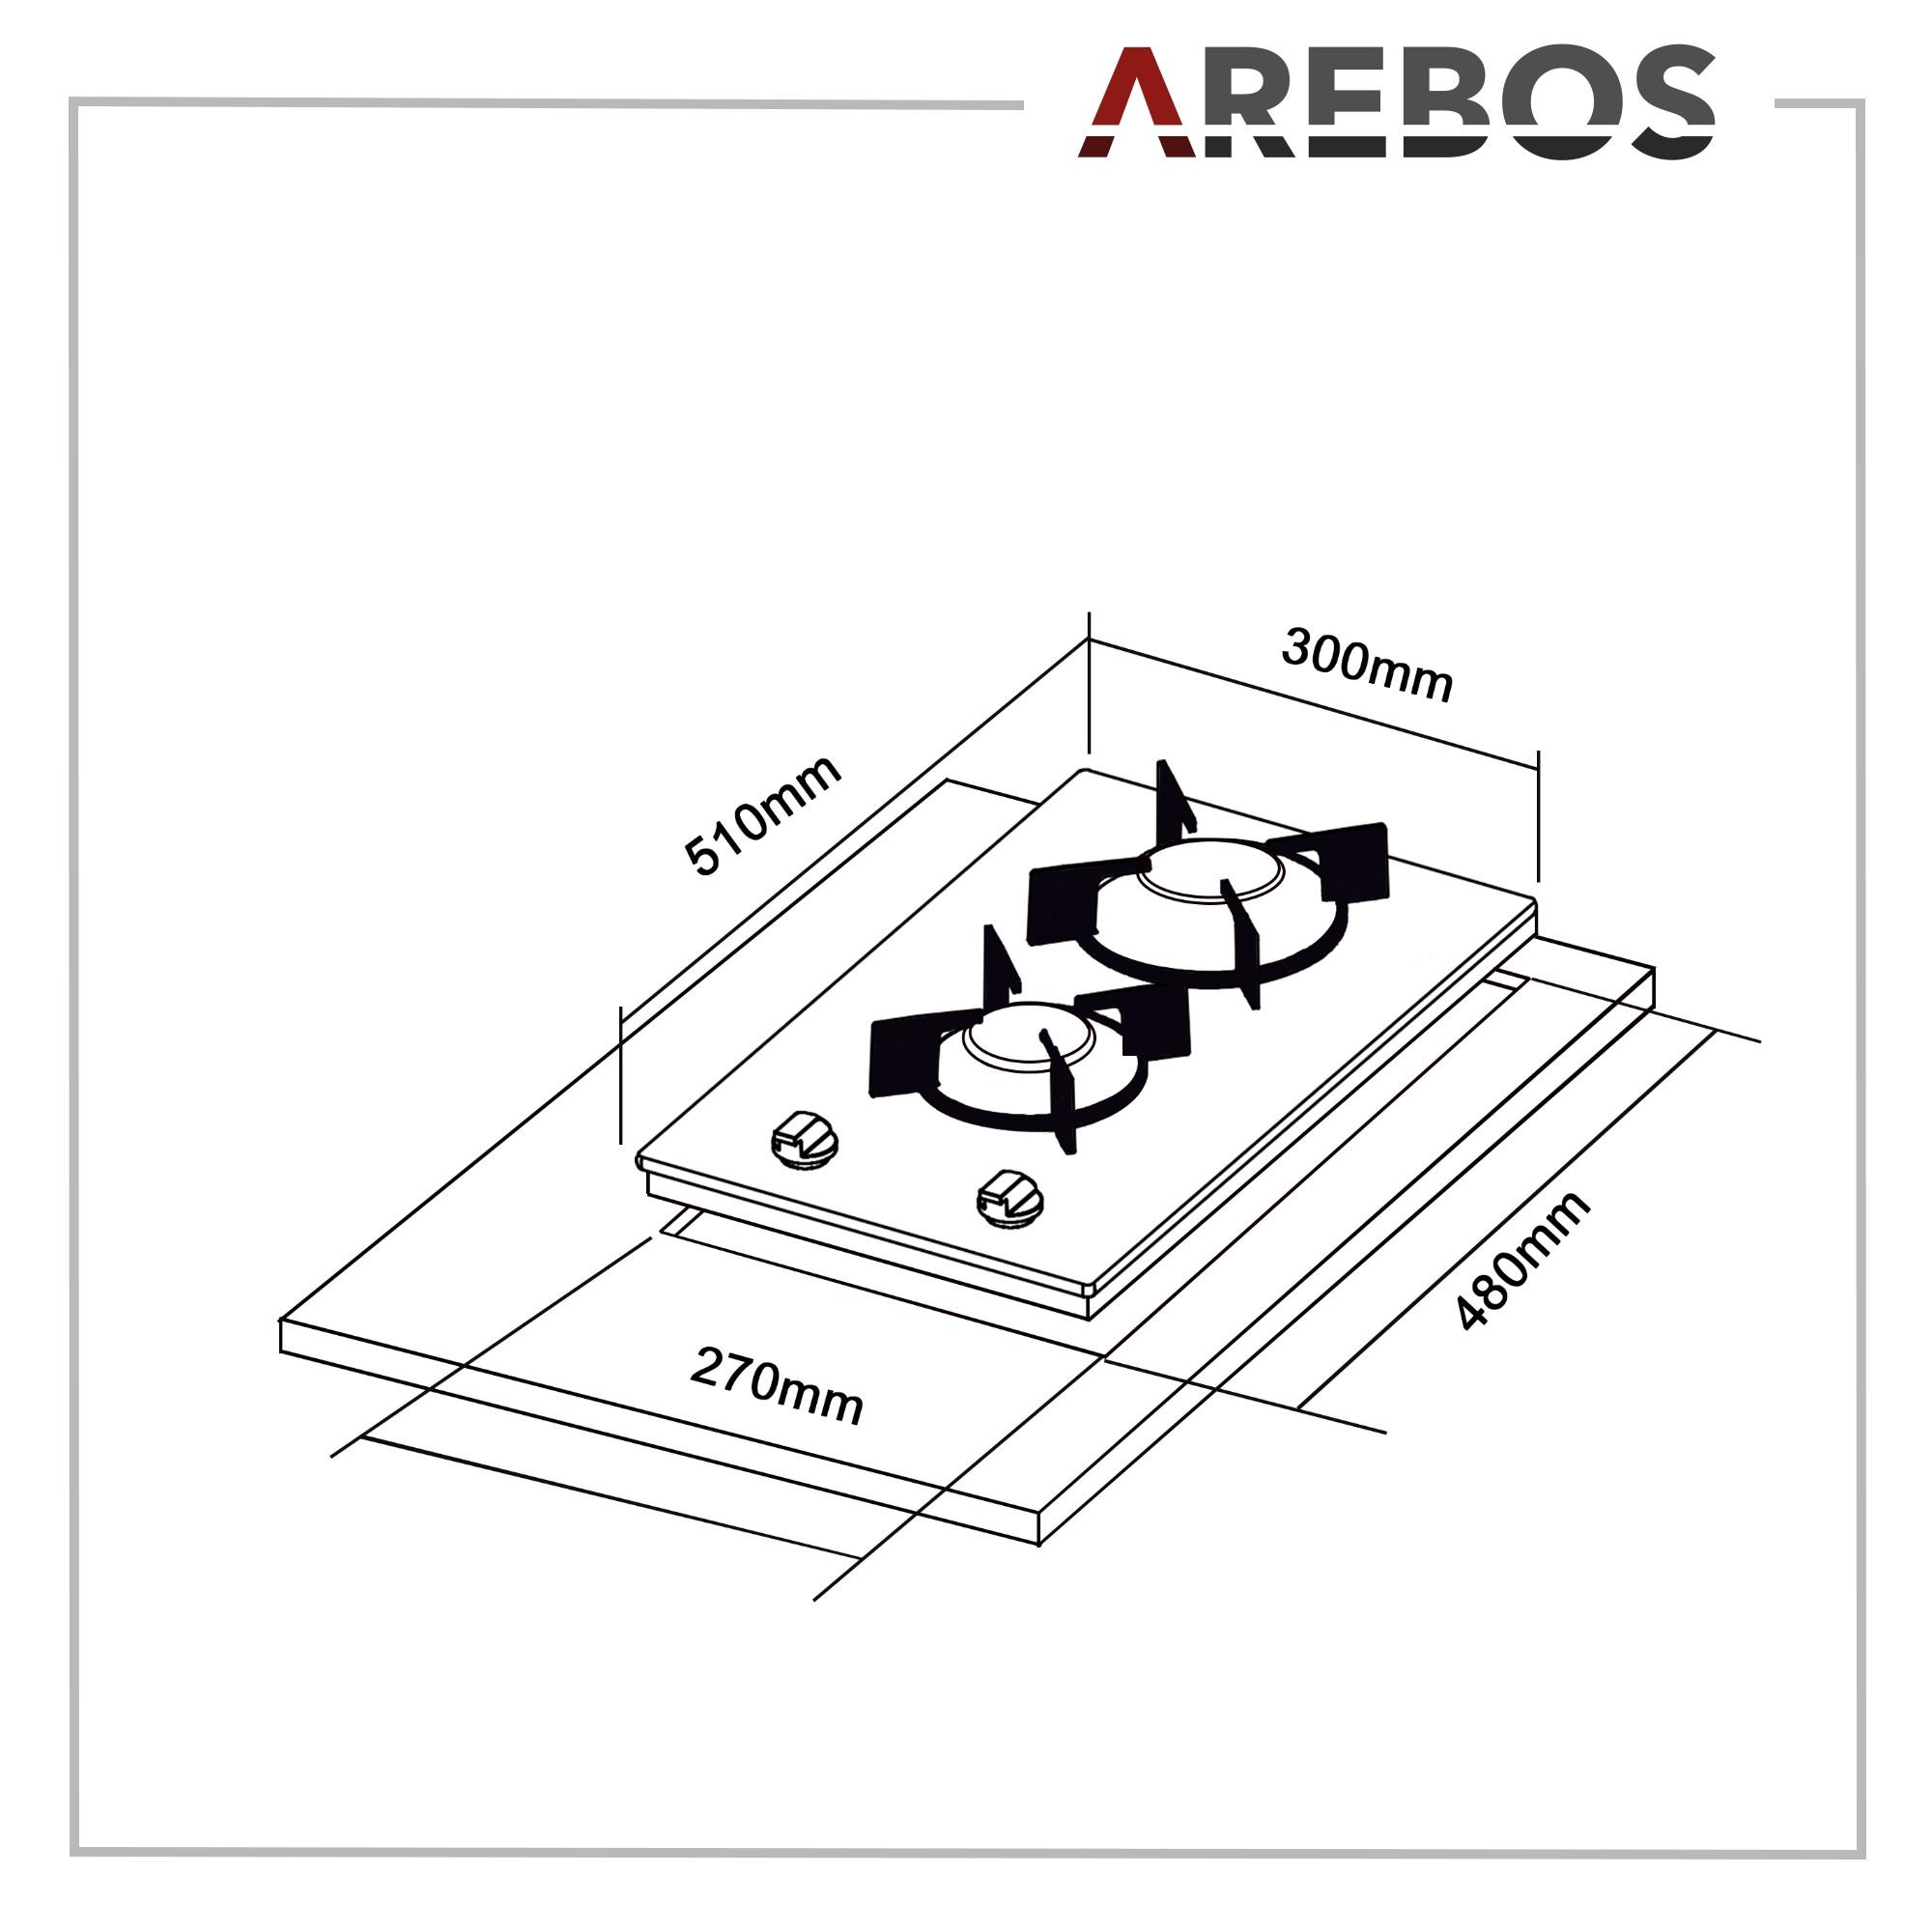 Arebos Cucina Piano Cottura a Gas | Vetroceramica | 2 Fuochi per Gas Naturale | Grill e pilota di sicurezza inclusi  